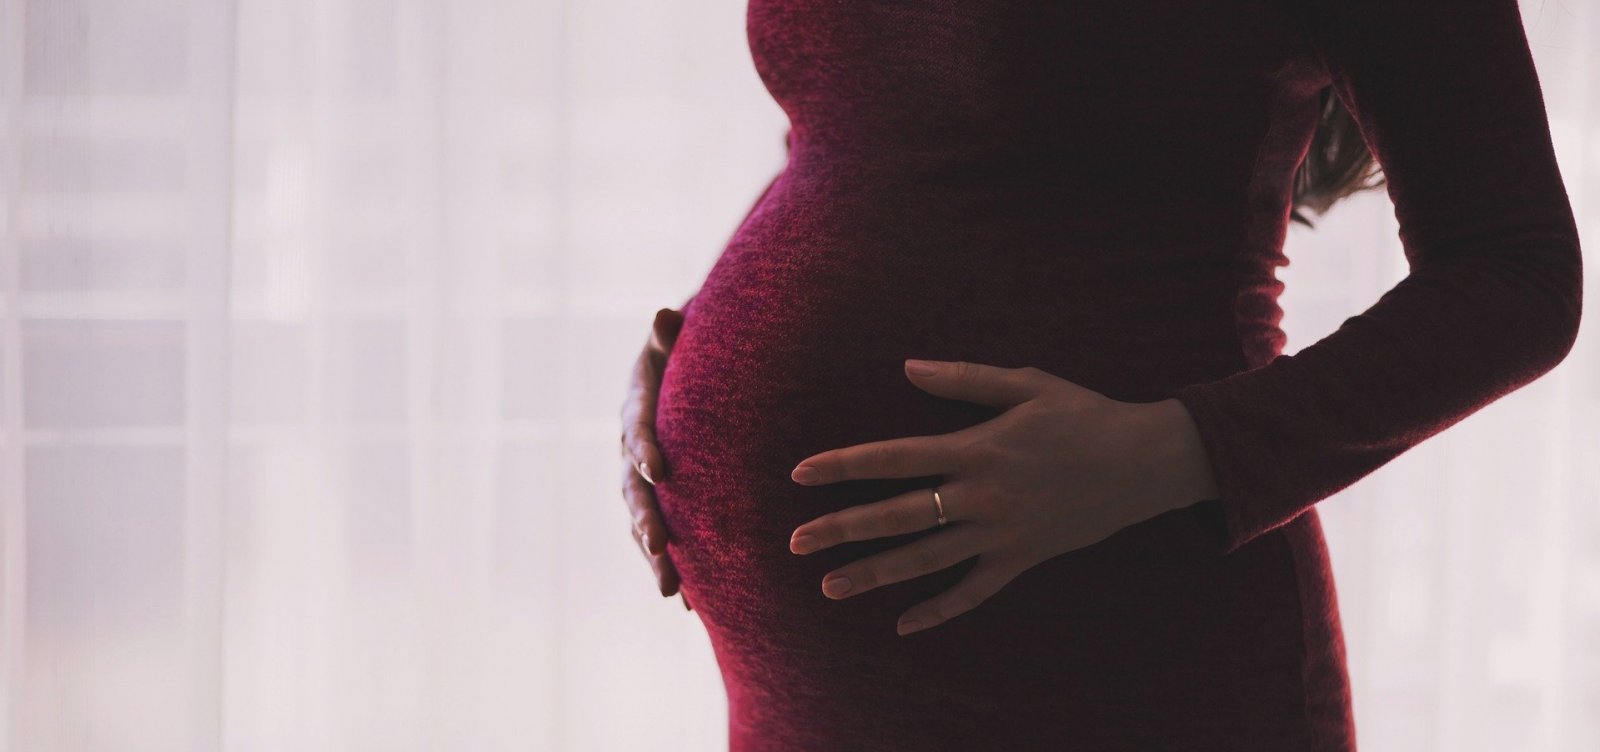 Ministério da Saúde pede que gravidez seja evitada até o fim da pandemia, se possível